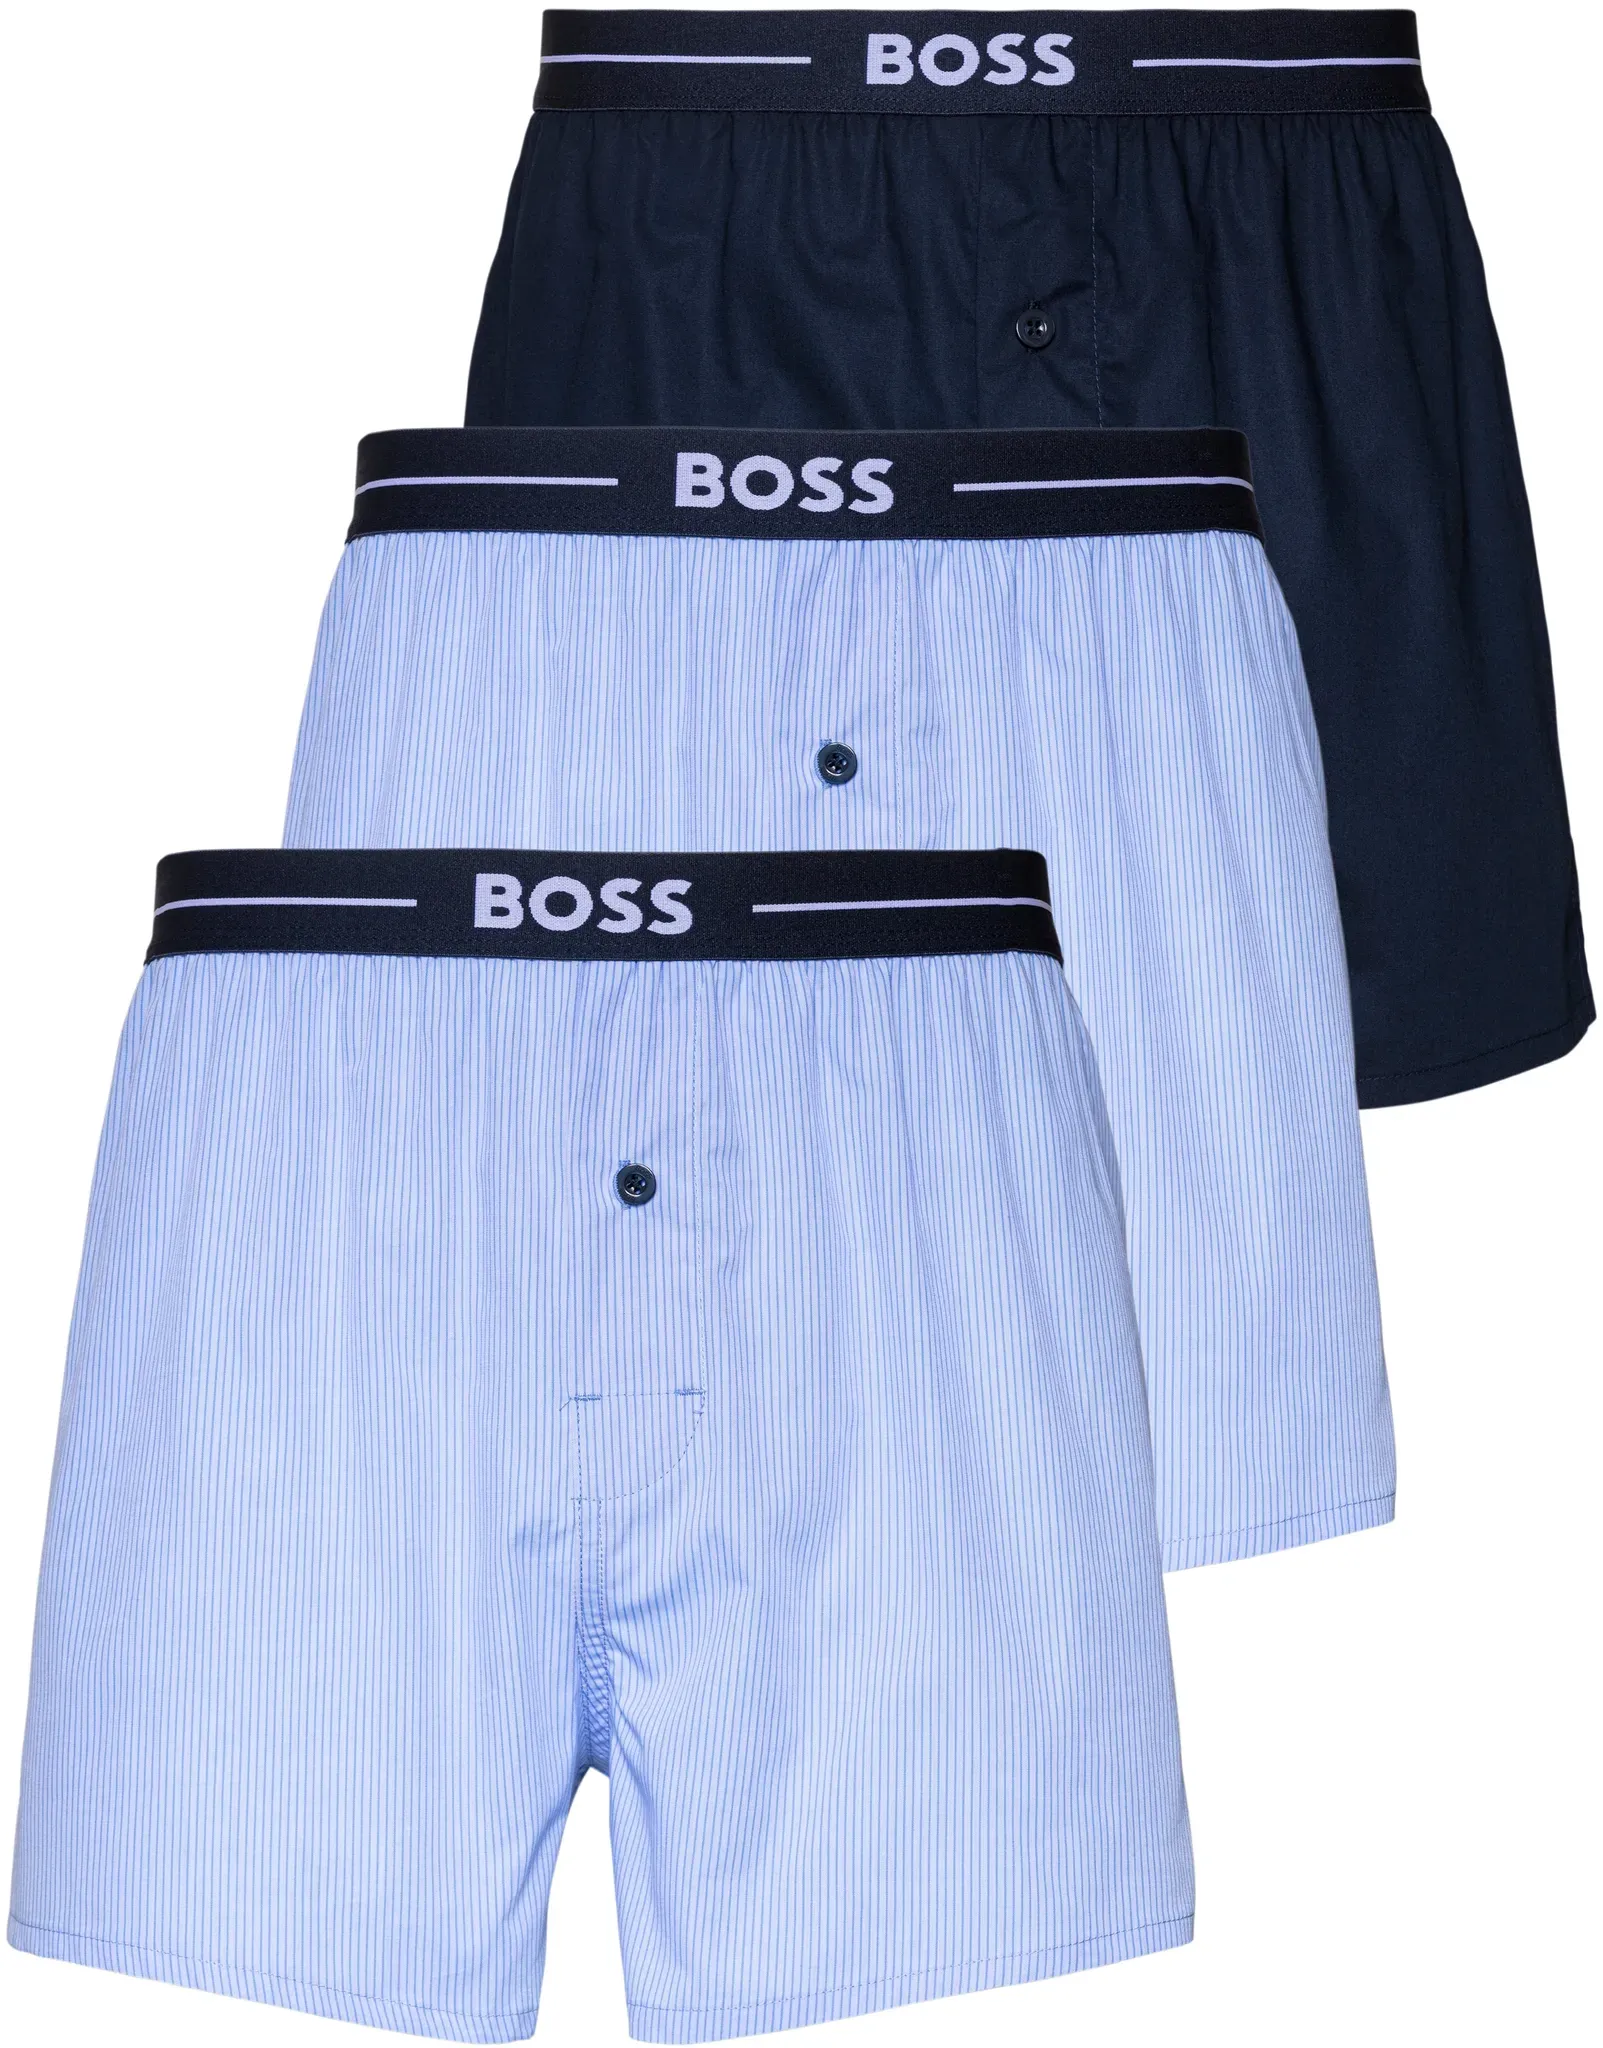 Boxershorts BOSS "3P Woven Boxer 10255001 01" Gr. L (52), 3 St., blau (open blue 473) Herren Unterhosen Boss mit BOSS Schriftzug auf dem Bund